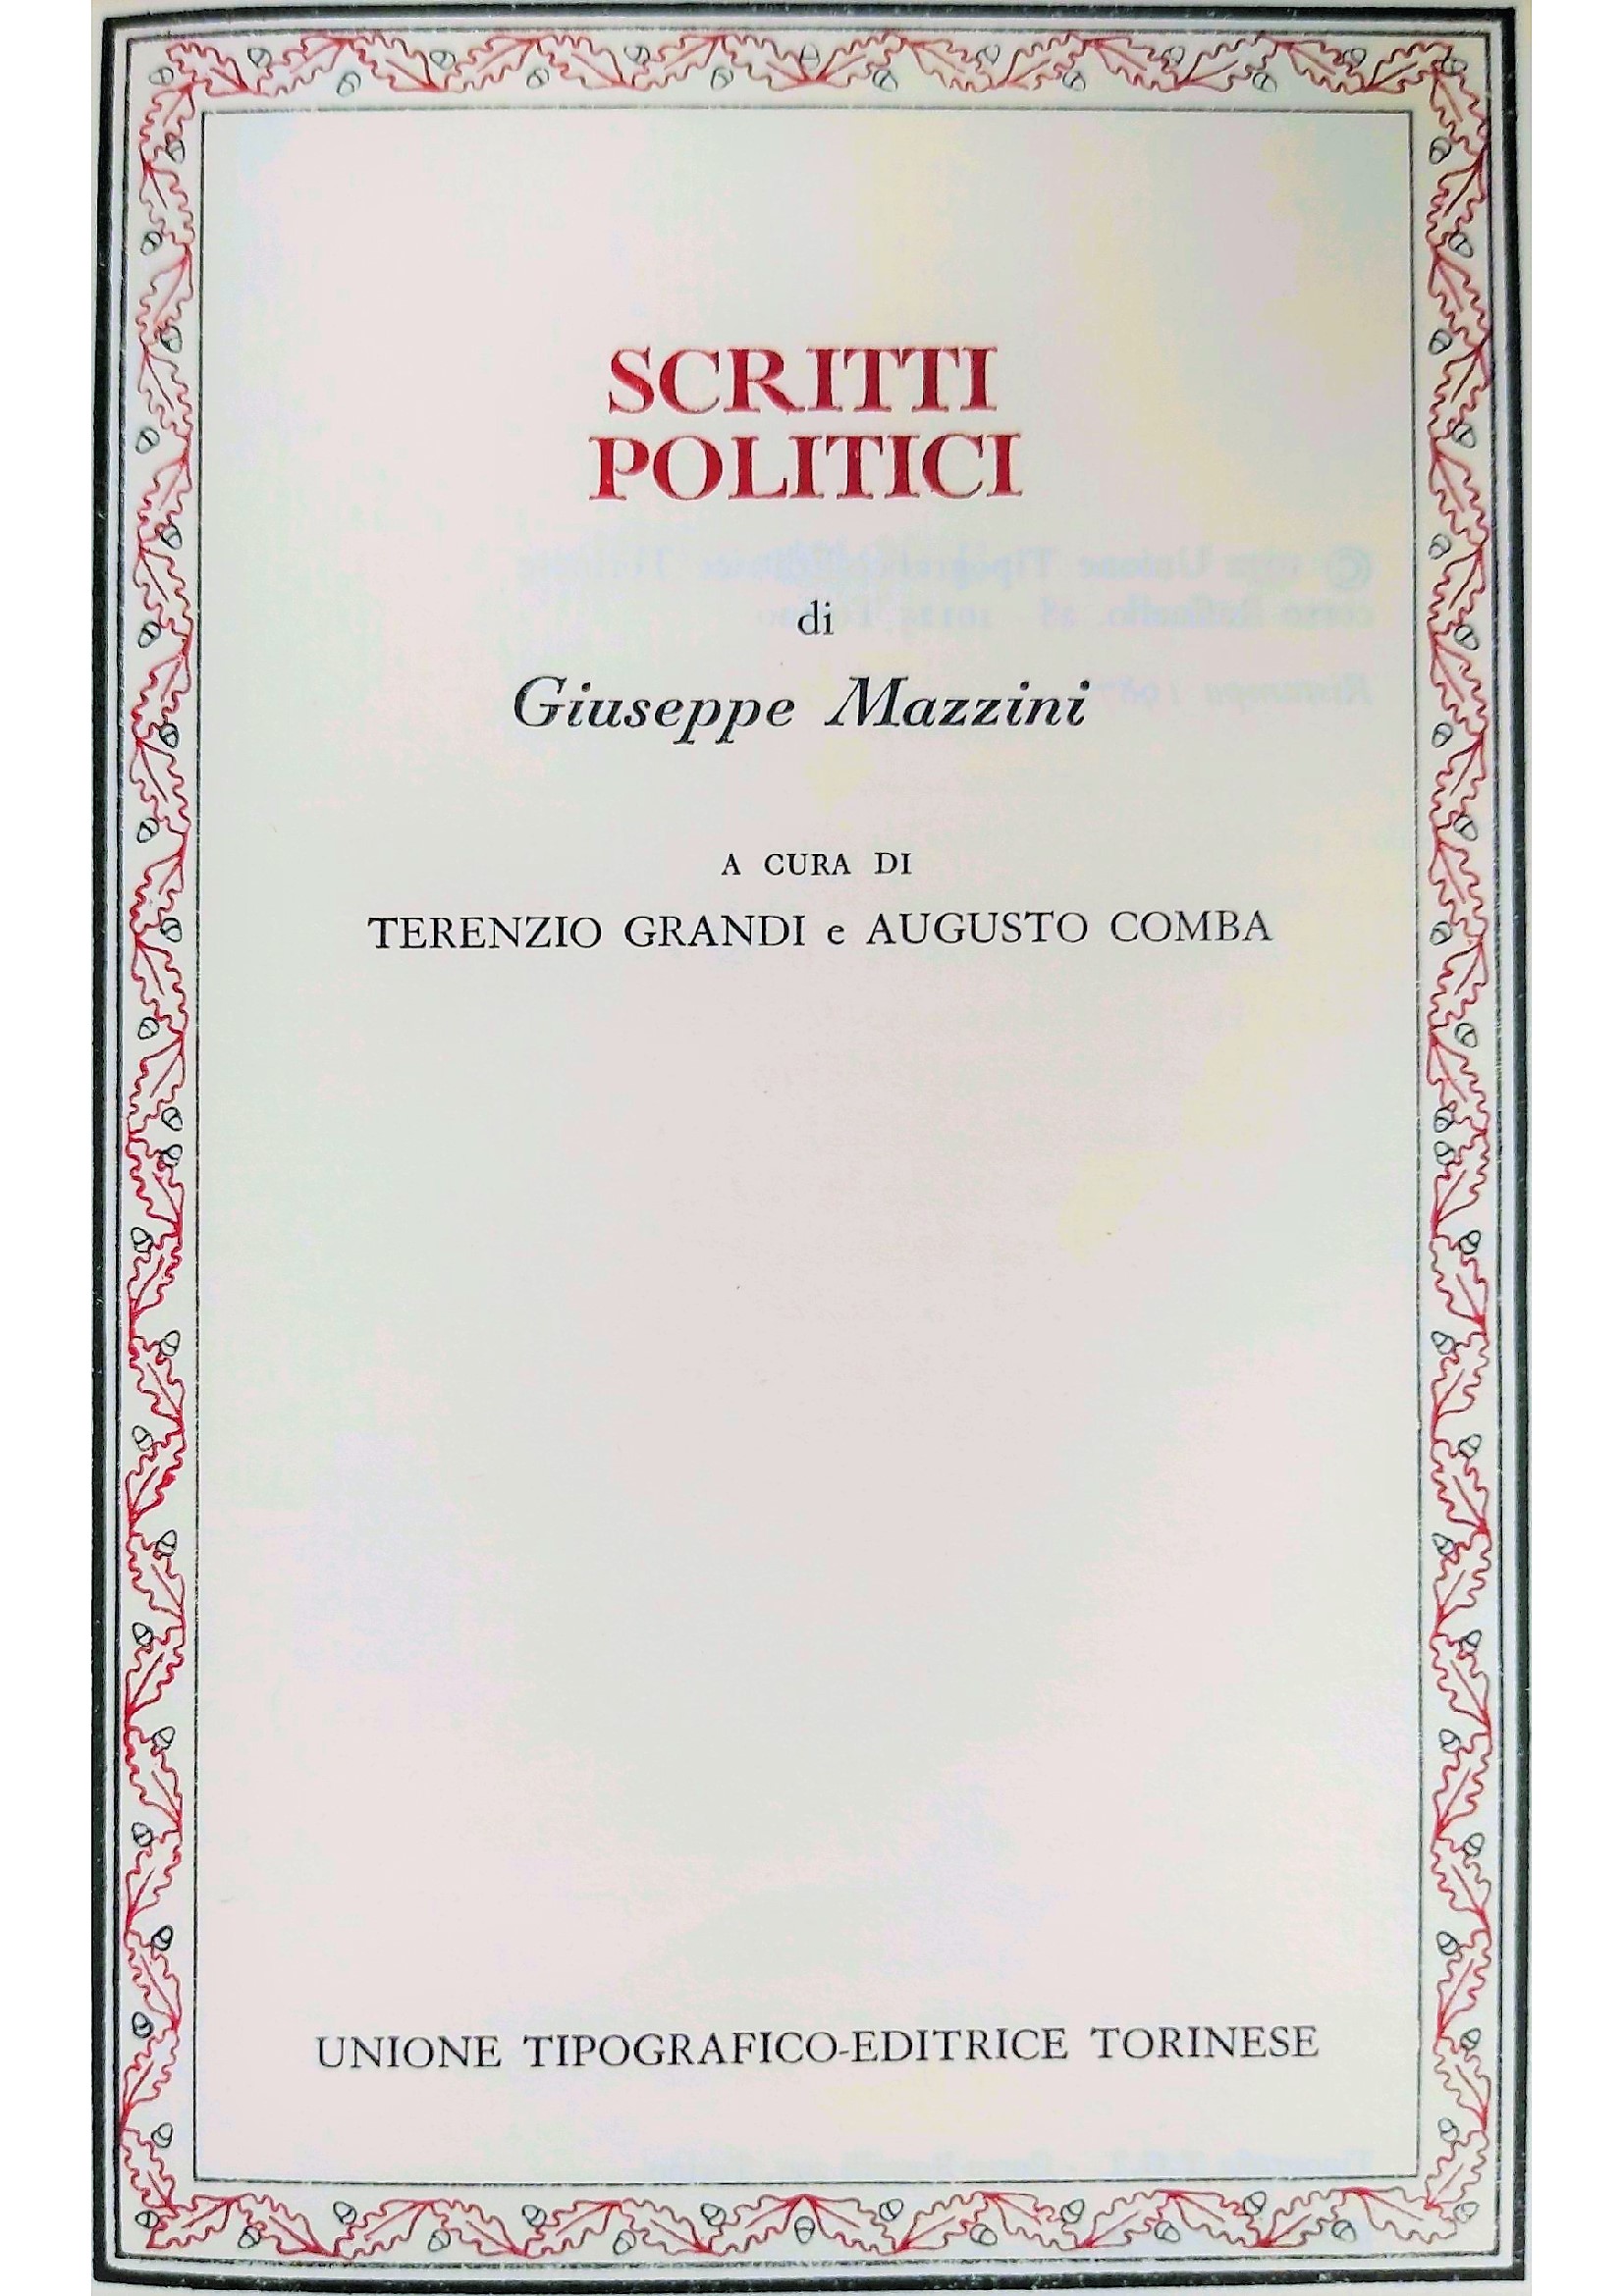 LiberaLibri 2022 – Michele Gerace legge “Gli scritti politici” di Giuseppe Mazzini